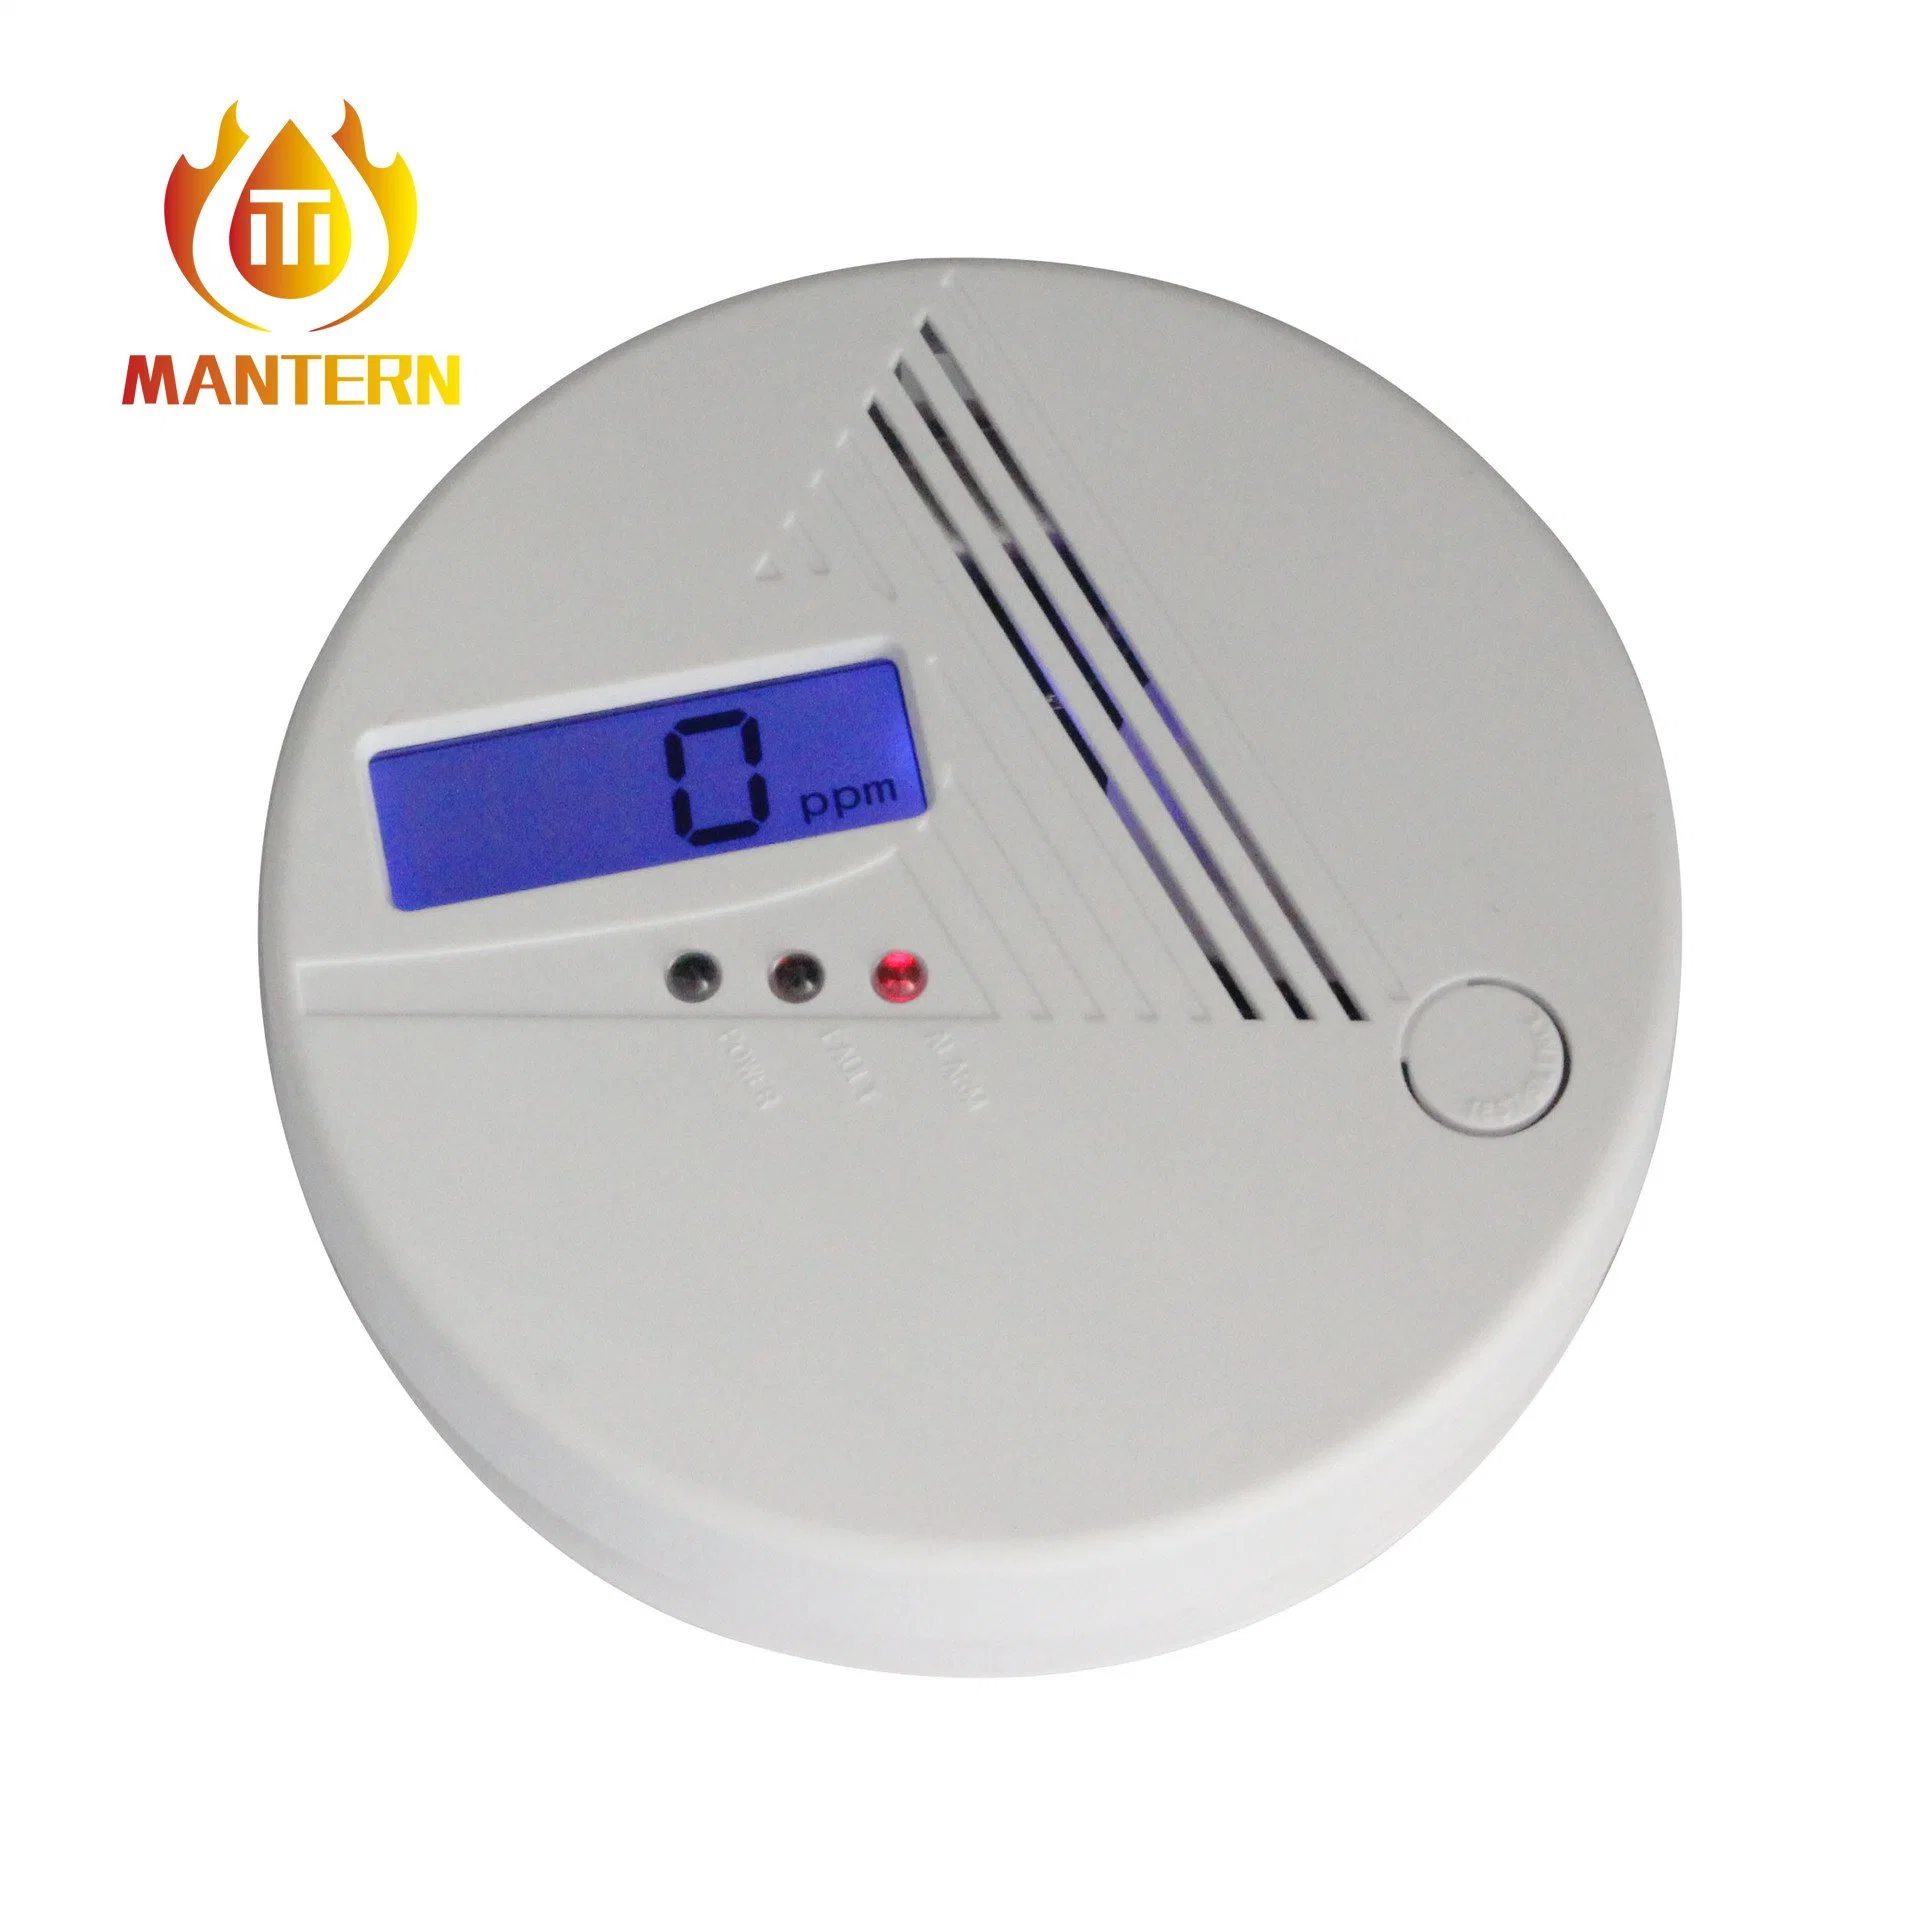 Beliebteste Fabrik Preis Co Gas-Alarm-Sensor mit Temperatur Funktion Lecksuchgerät Für Brennbares Gas